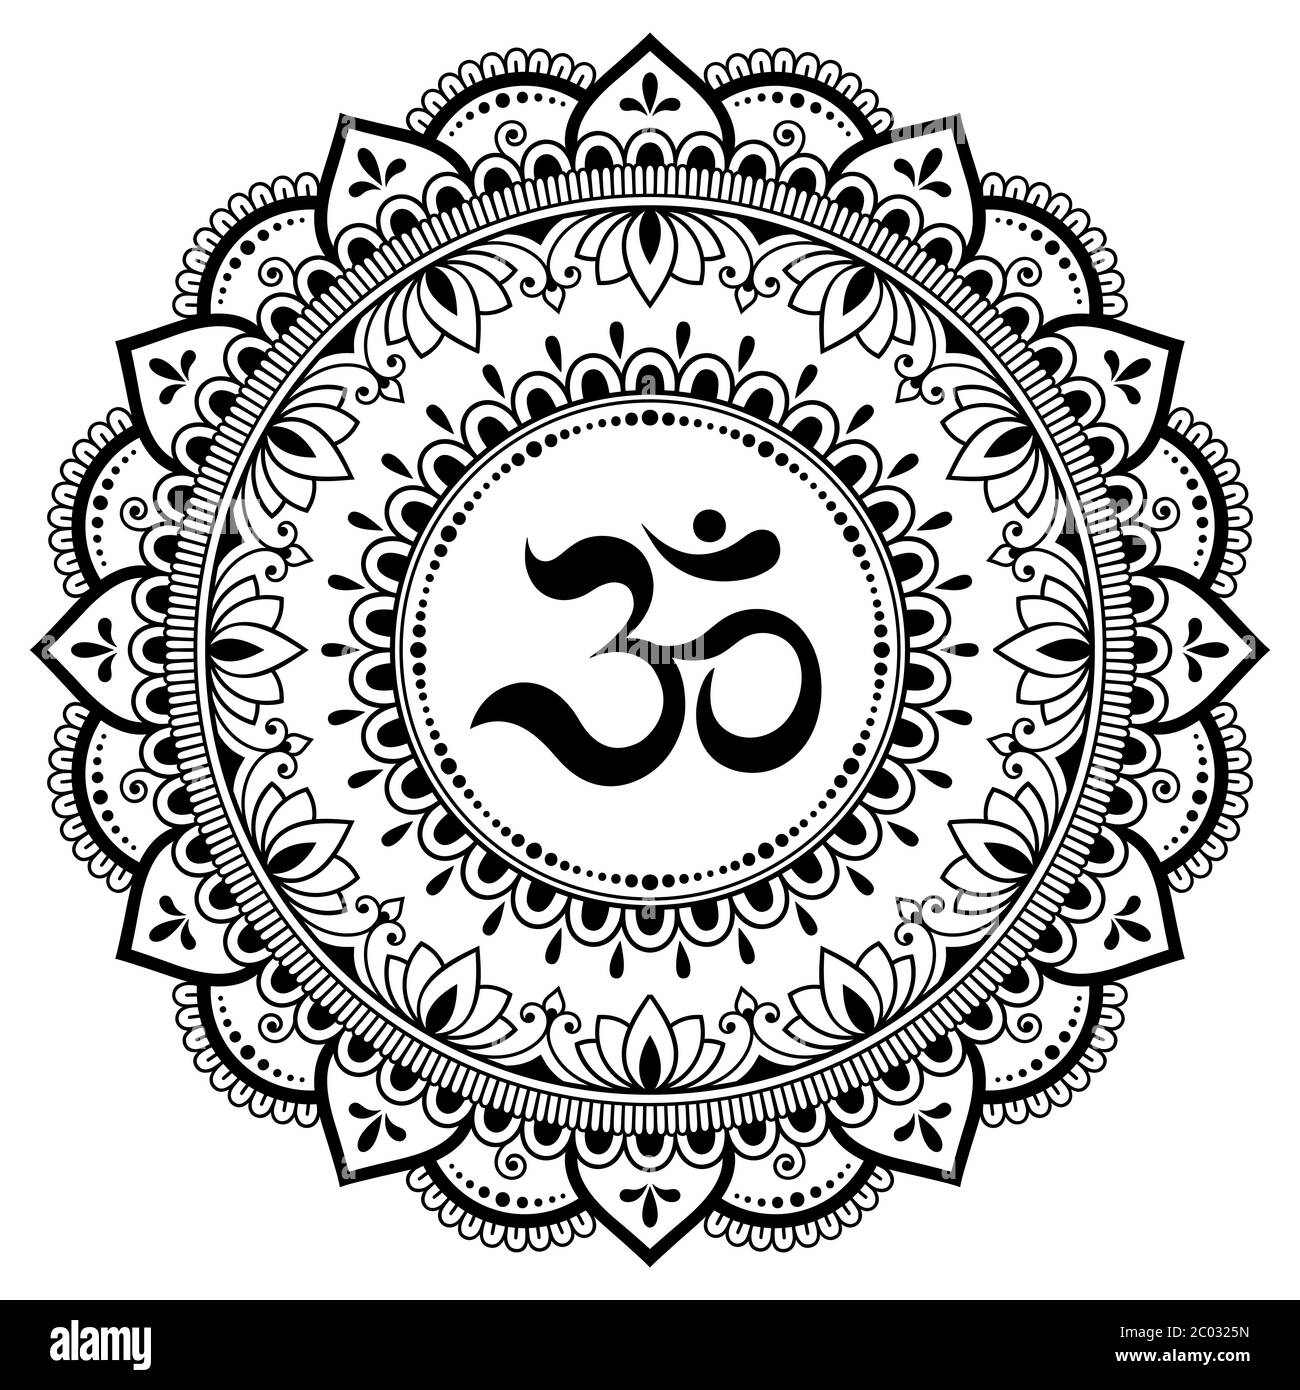 Disegno circolare in forma di mandala per Henna, Mehndi, tatuaggio, decorazione. Ornamento decorativo in stile orientale con antico mantra indù OM. Colorazione Illustrazione Vettoriale